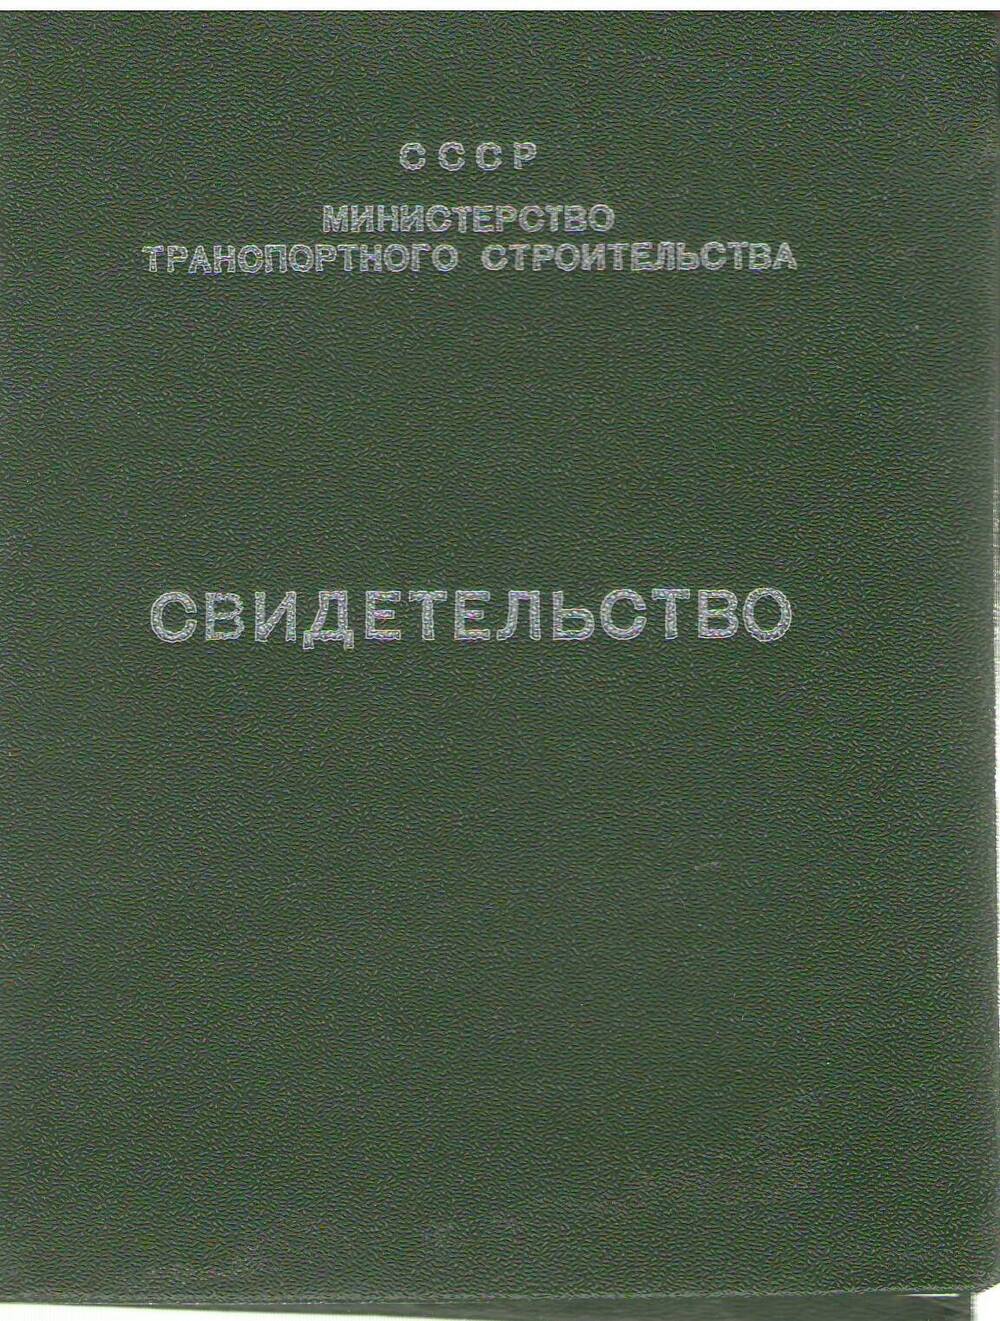 Свидетельство № 00599 Потехина Юрия  Михайловича об окончании курсов в Учебном пункте треста Бамтрансвзрывпром.